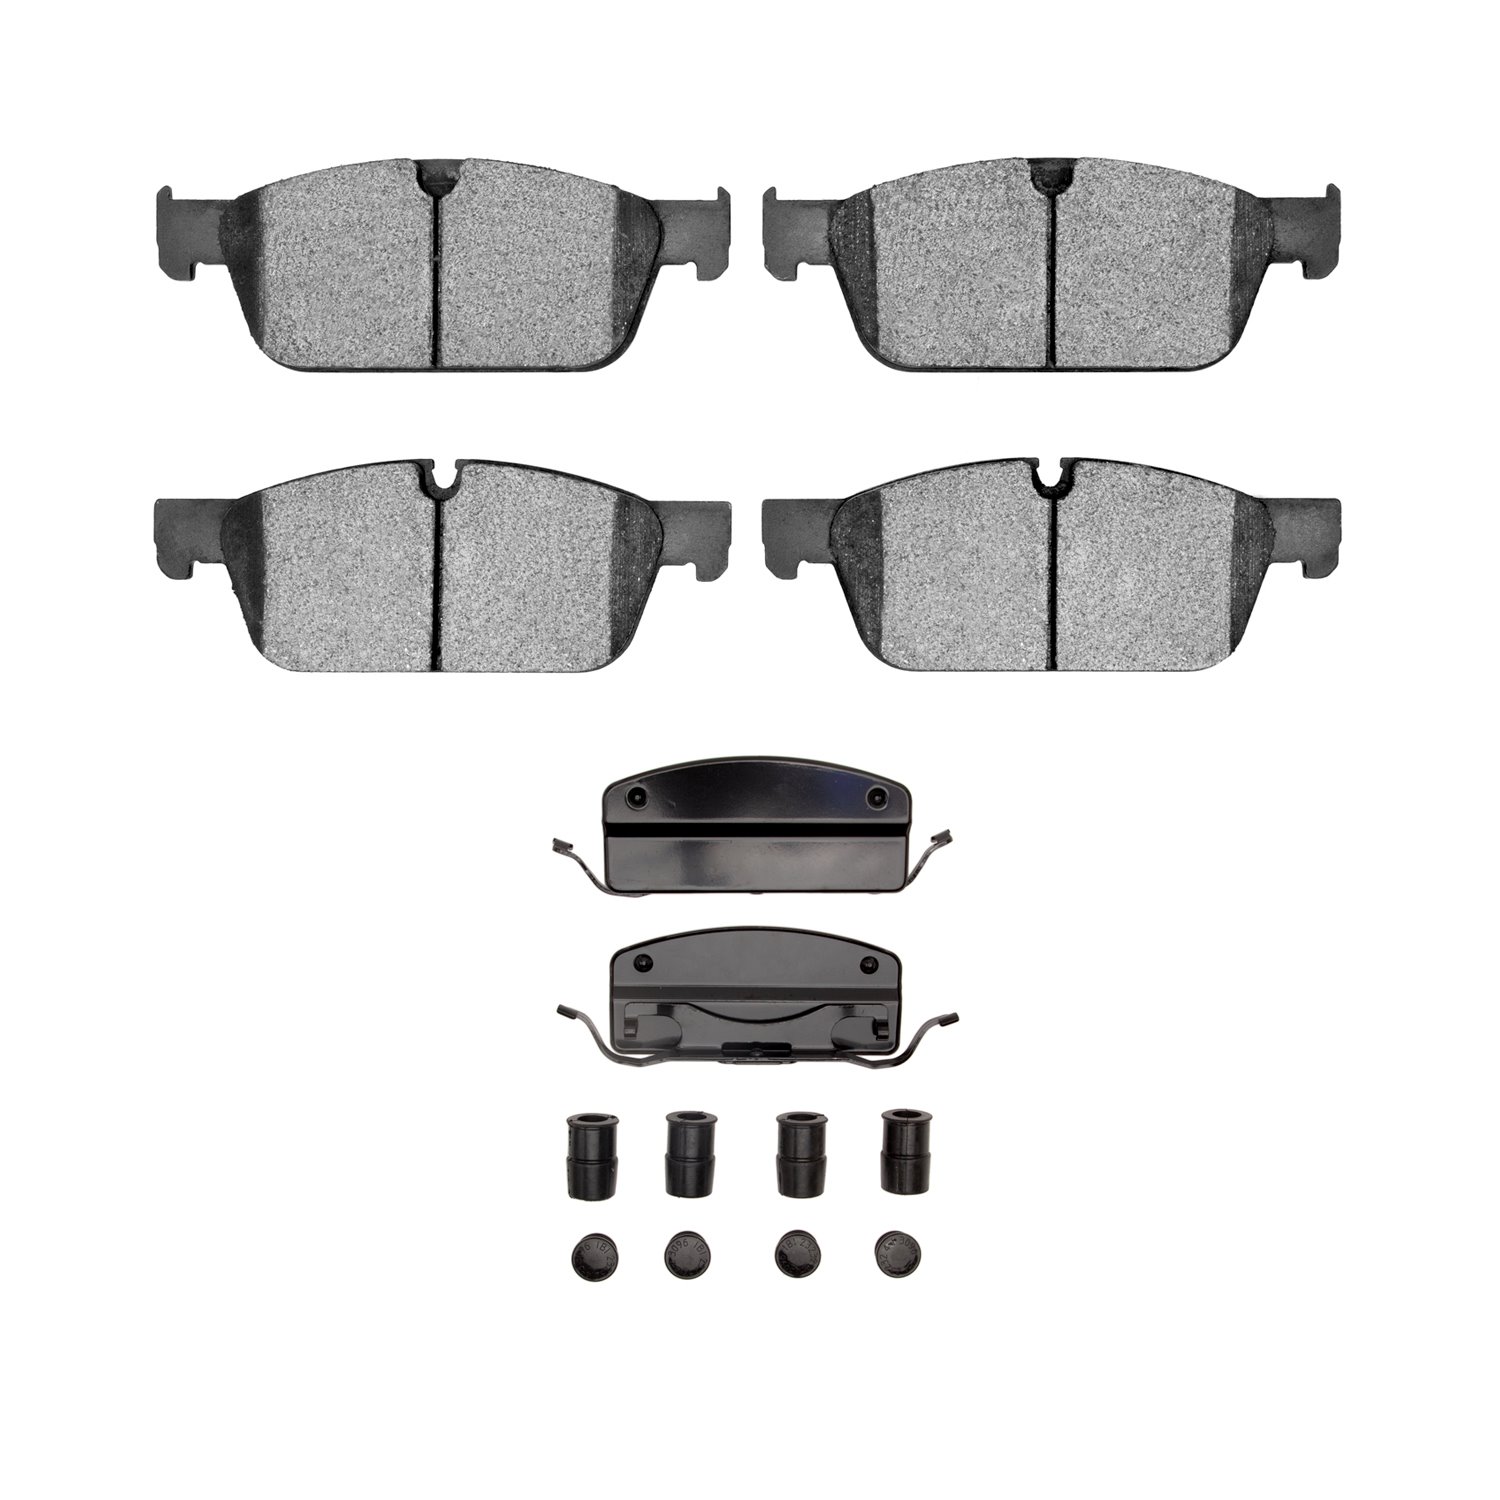 1311-1636-11 3000-Series Semi-Metallic Brake Pads & Hardware Kit, 2013-2019 Mercedes-Benz, Position: Front